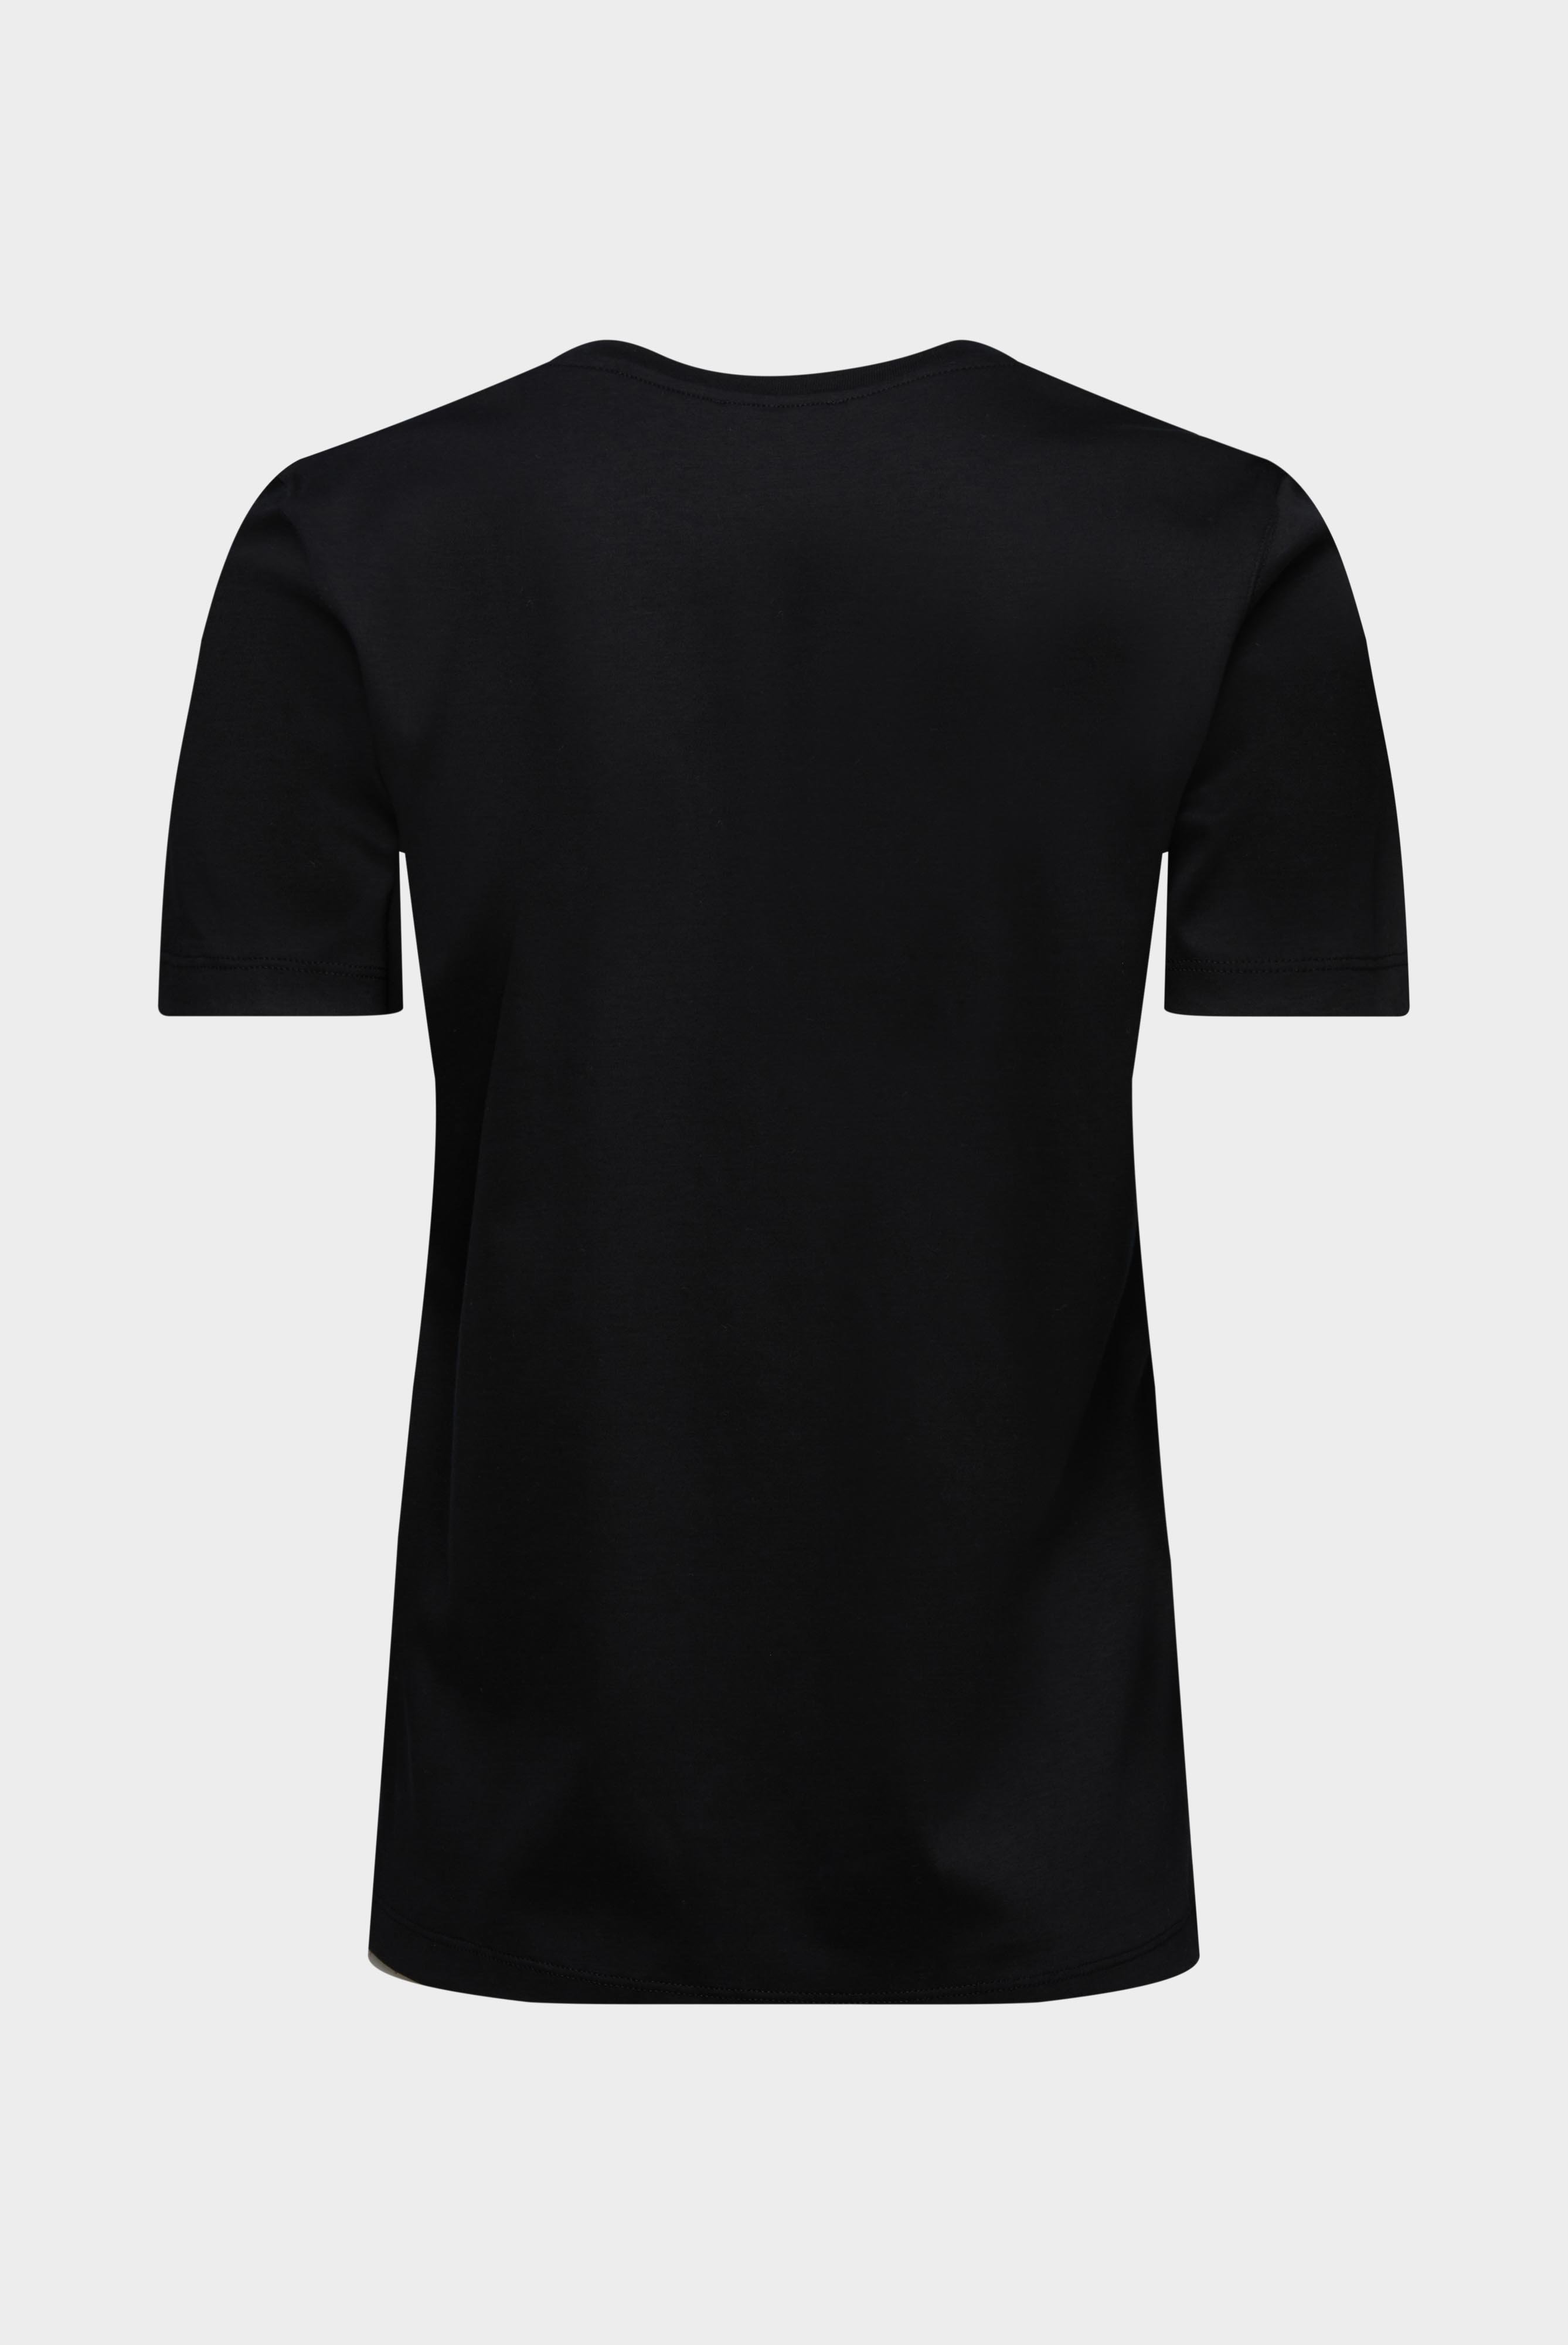 Tops & T-Shirts+Jersey T-Shirt+05.6384.18.180031.099.36